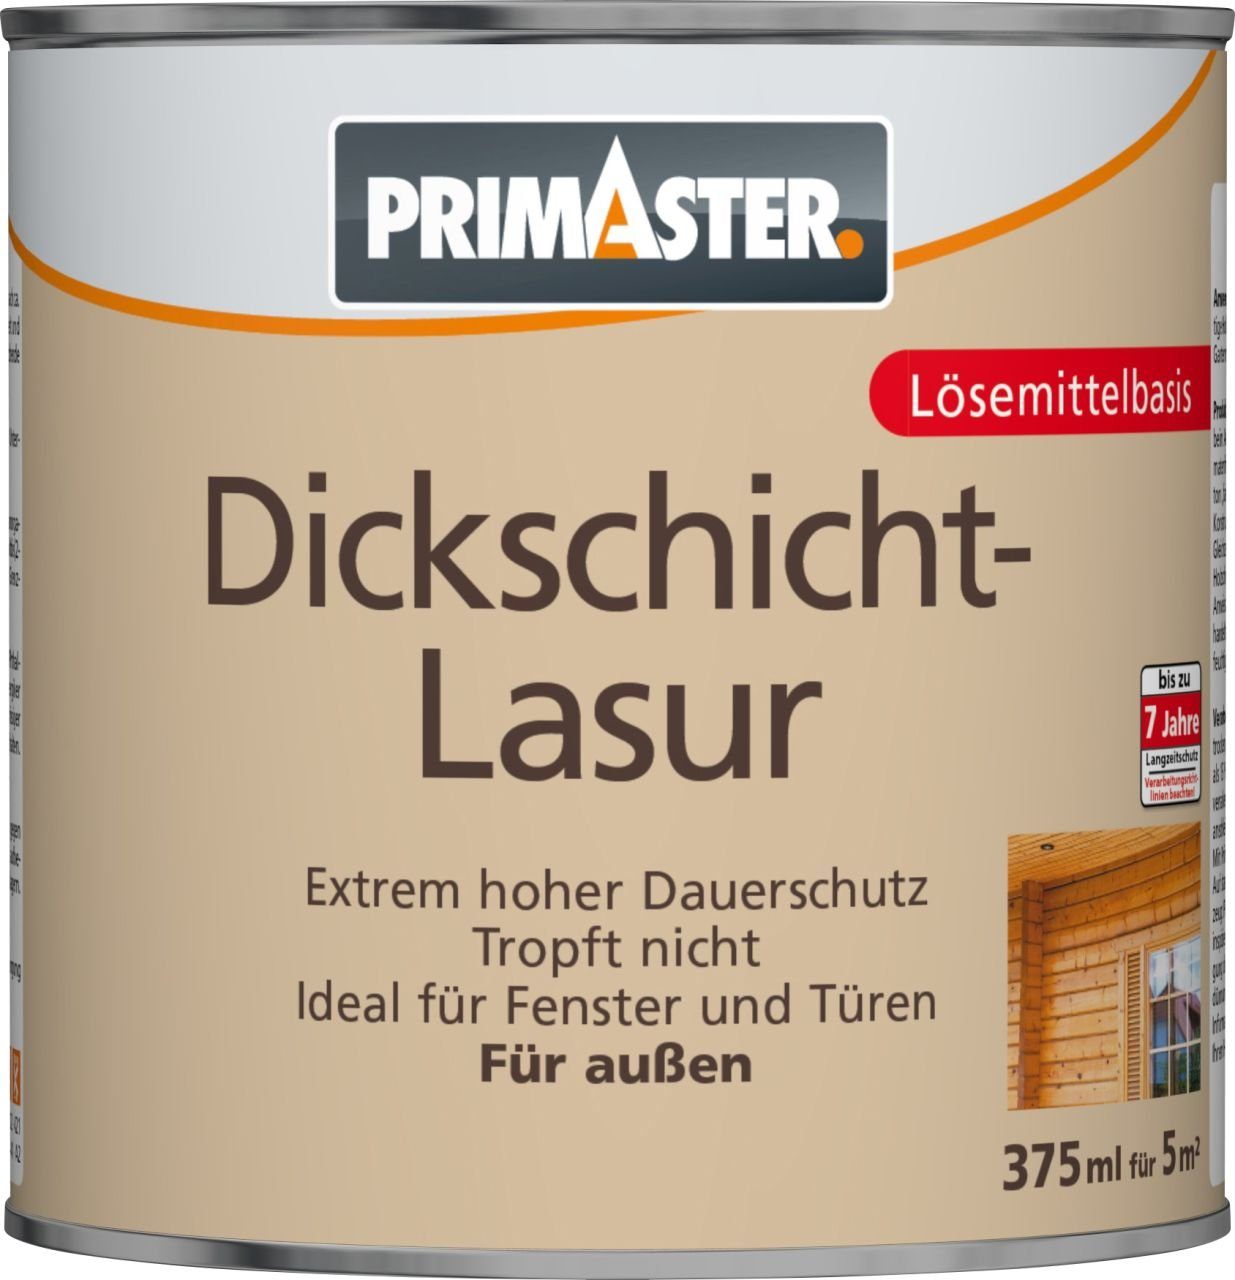 ml mahagoni Lasur Dickschichtlasur Primaster Primaster 375